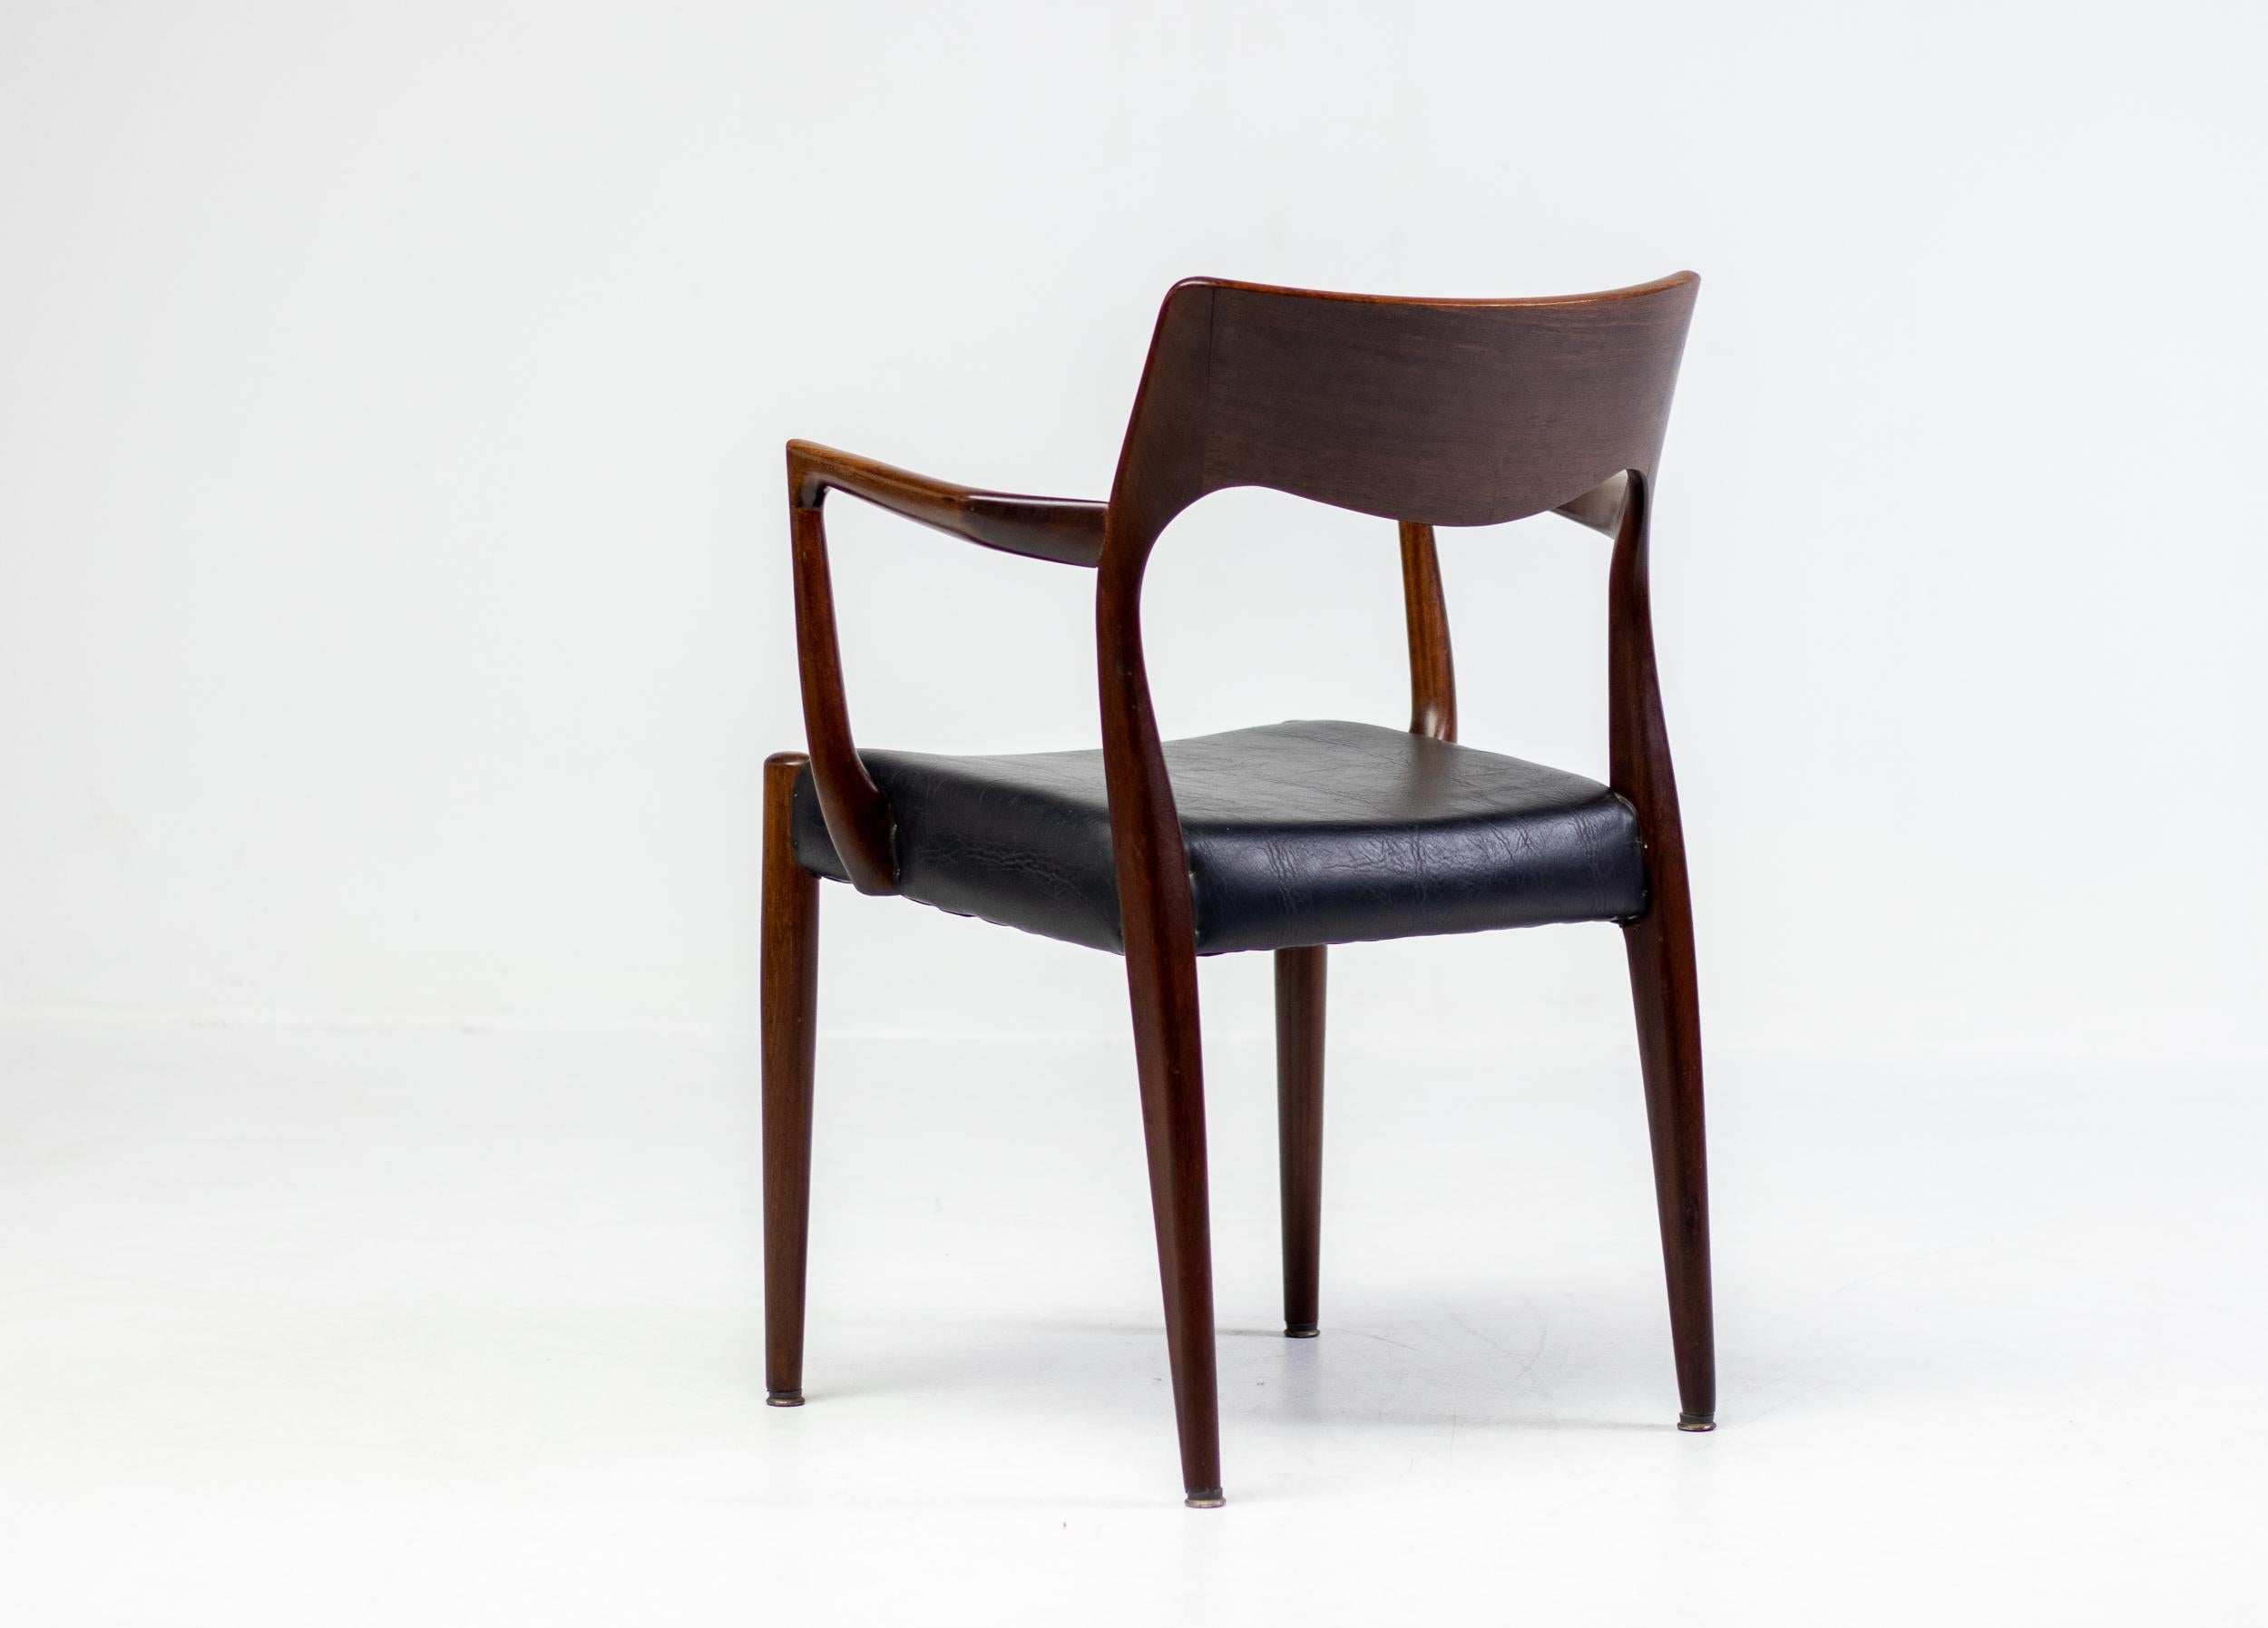 Begehrter Sessel Modell 57 aus Teakholz, entworfen von Niels Otto Møller für J.L Møllers Møbelfabrik in Dänemark.  Sehr eleganter Stuhl, der wunderbar zu einem skandinavischen Schreibtisch von Finn Juhl, Hans Wegner oder Arne Vodder passen